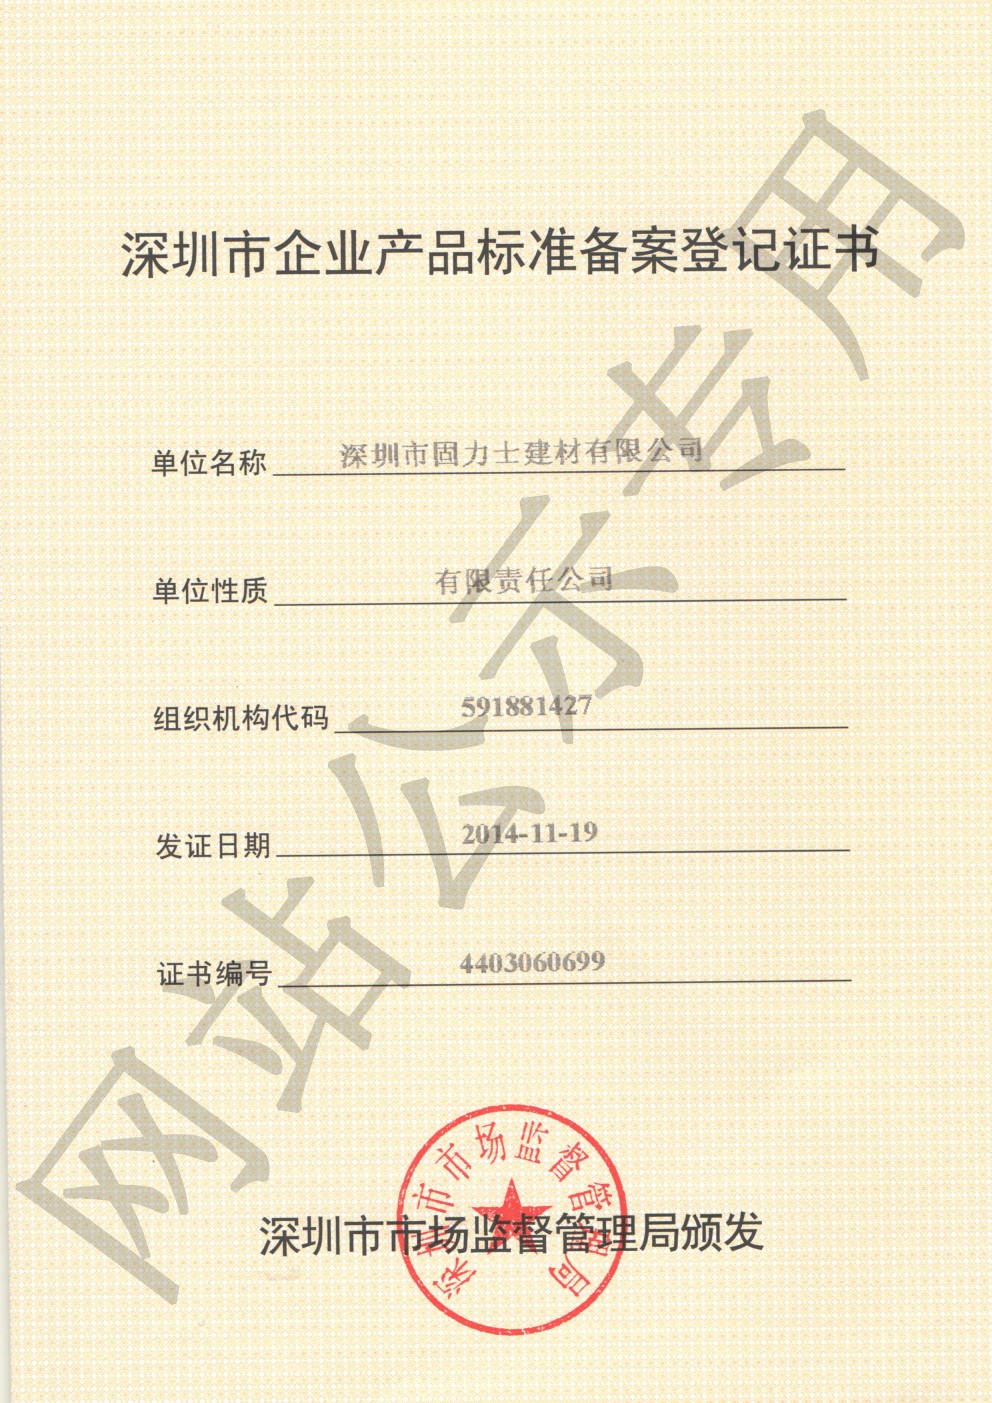 西盟企业产品标准登记证书